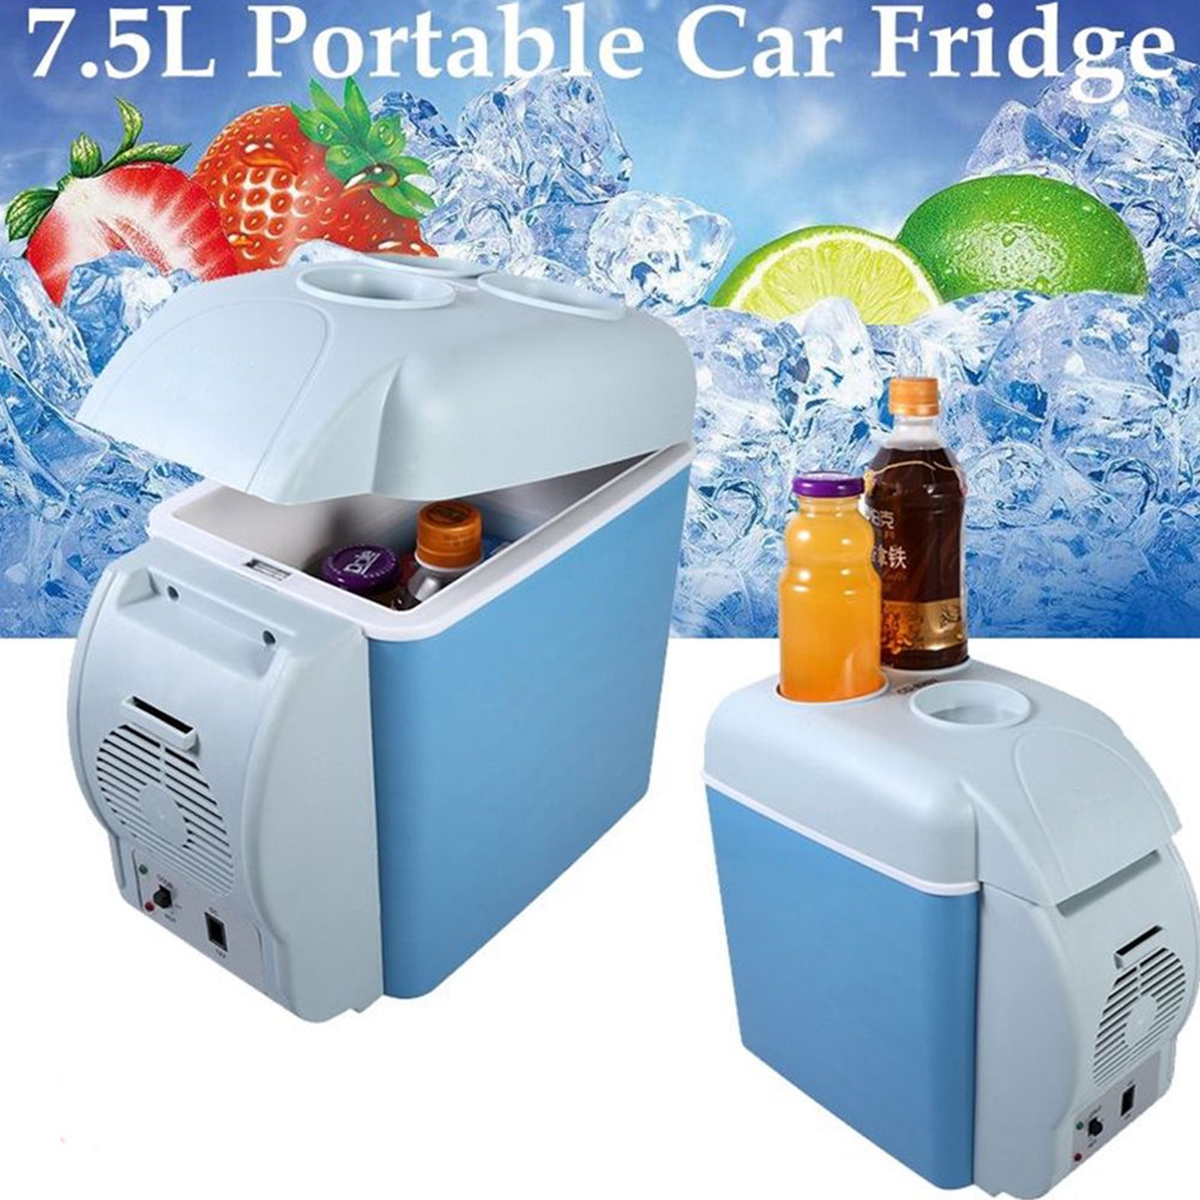 Portable Mini Car Fridge Freezer Cooler / Warmer 12V Portable Fridge Refrigerator 7.5L 11